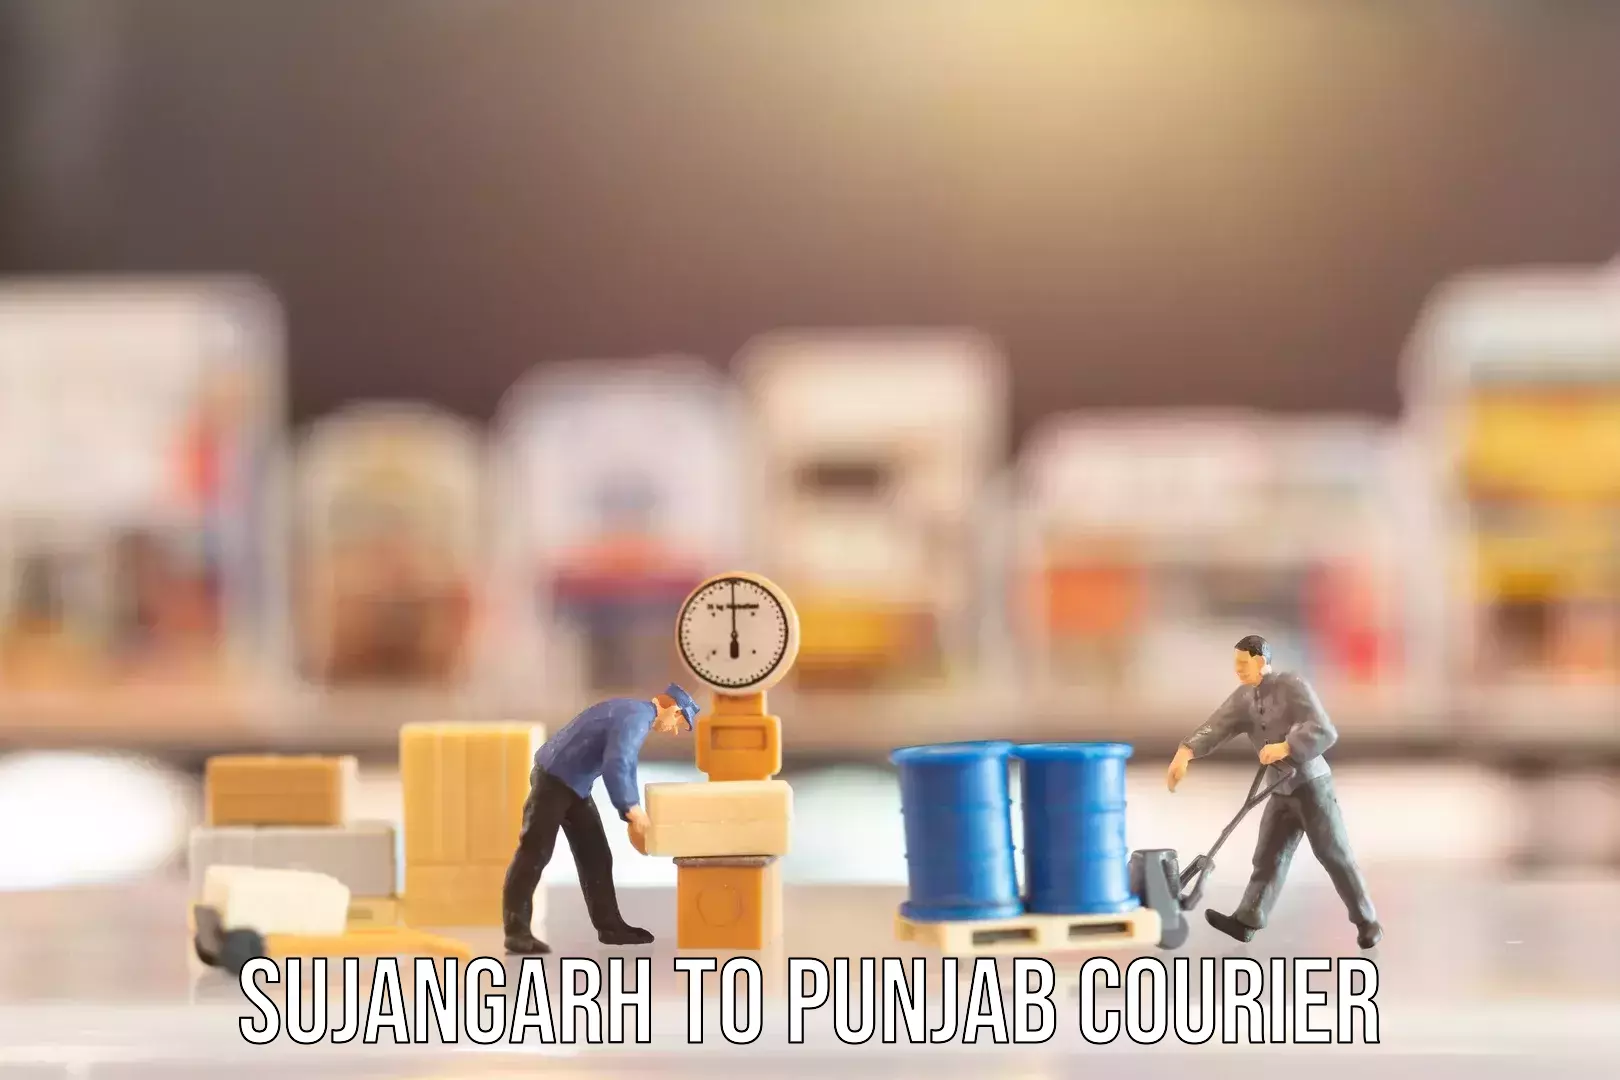 Baggage transport management Sujangarh to Dinanagar